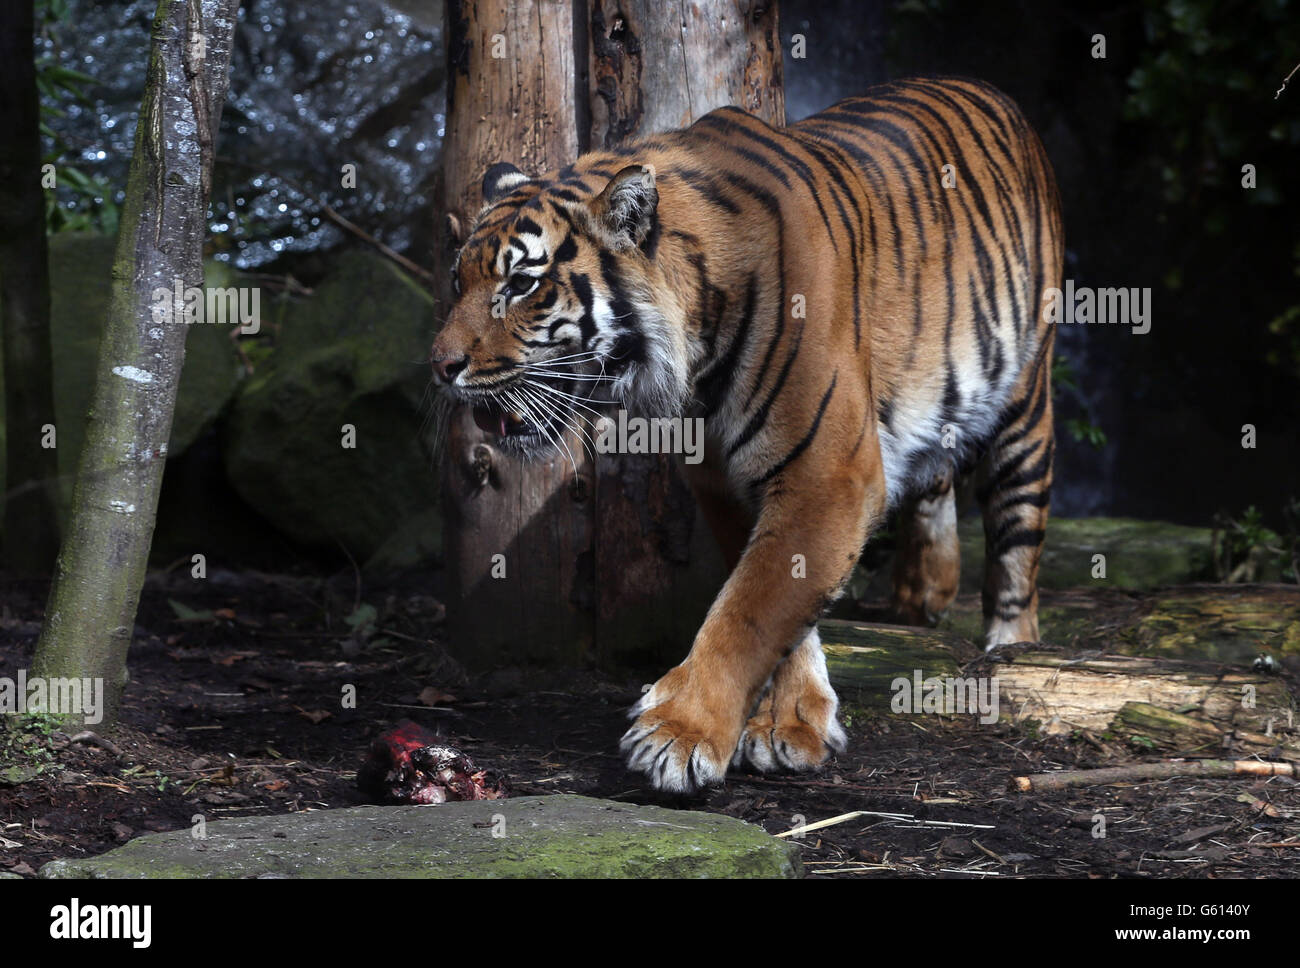 Baginda la tigre di Sumatran celebra il suo decimo compleanno allo Zoo di Edimburgo. Le tigri di Sumatran sono elencate come criticamente minacciate con solo 300 rimaste in natura. Foto Stock